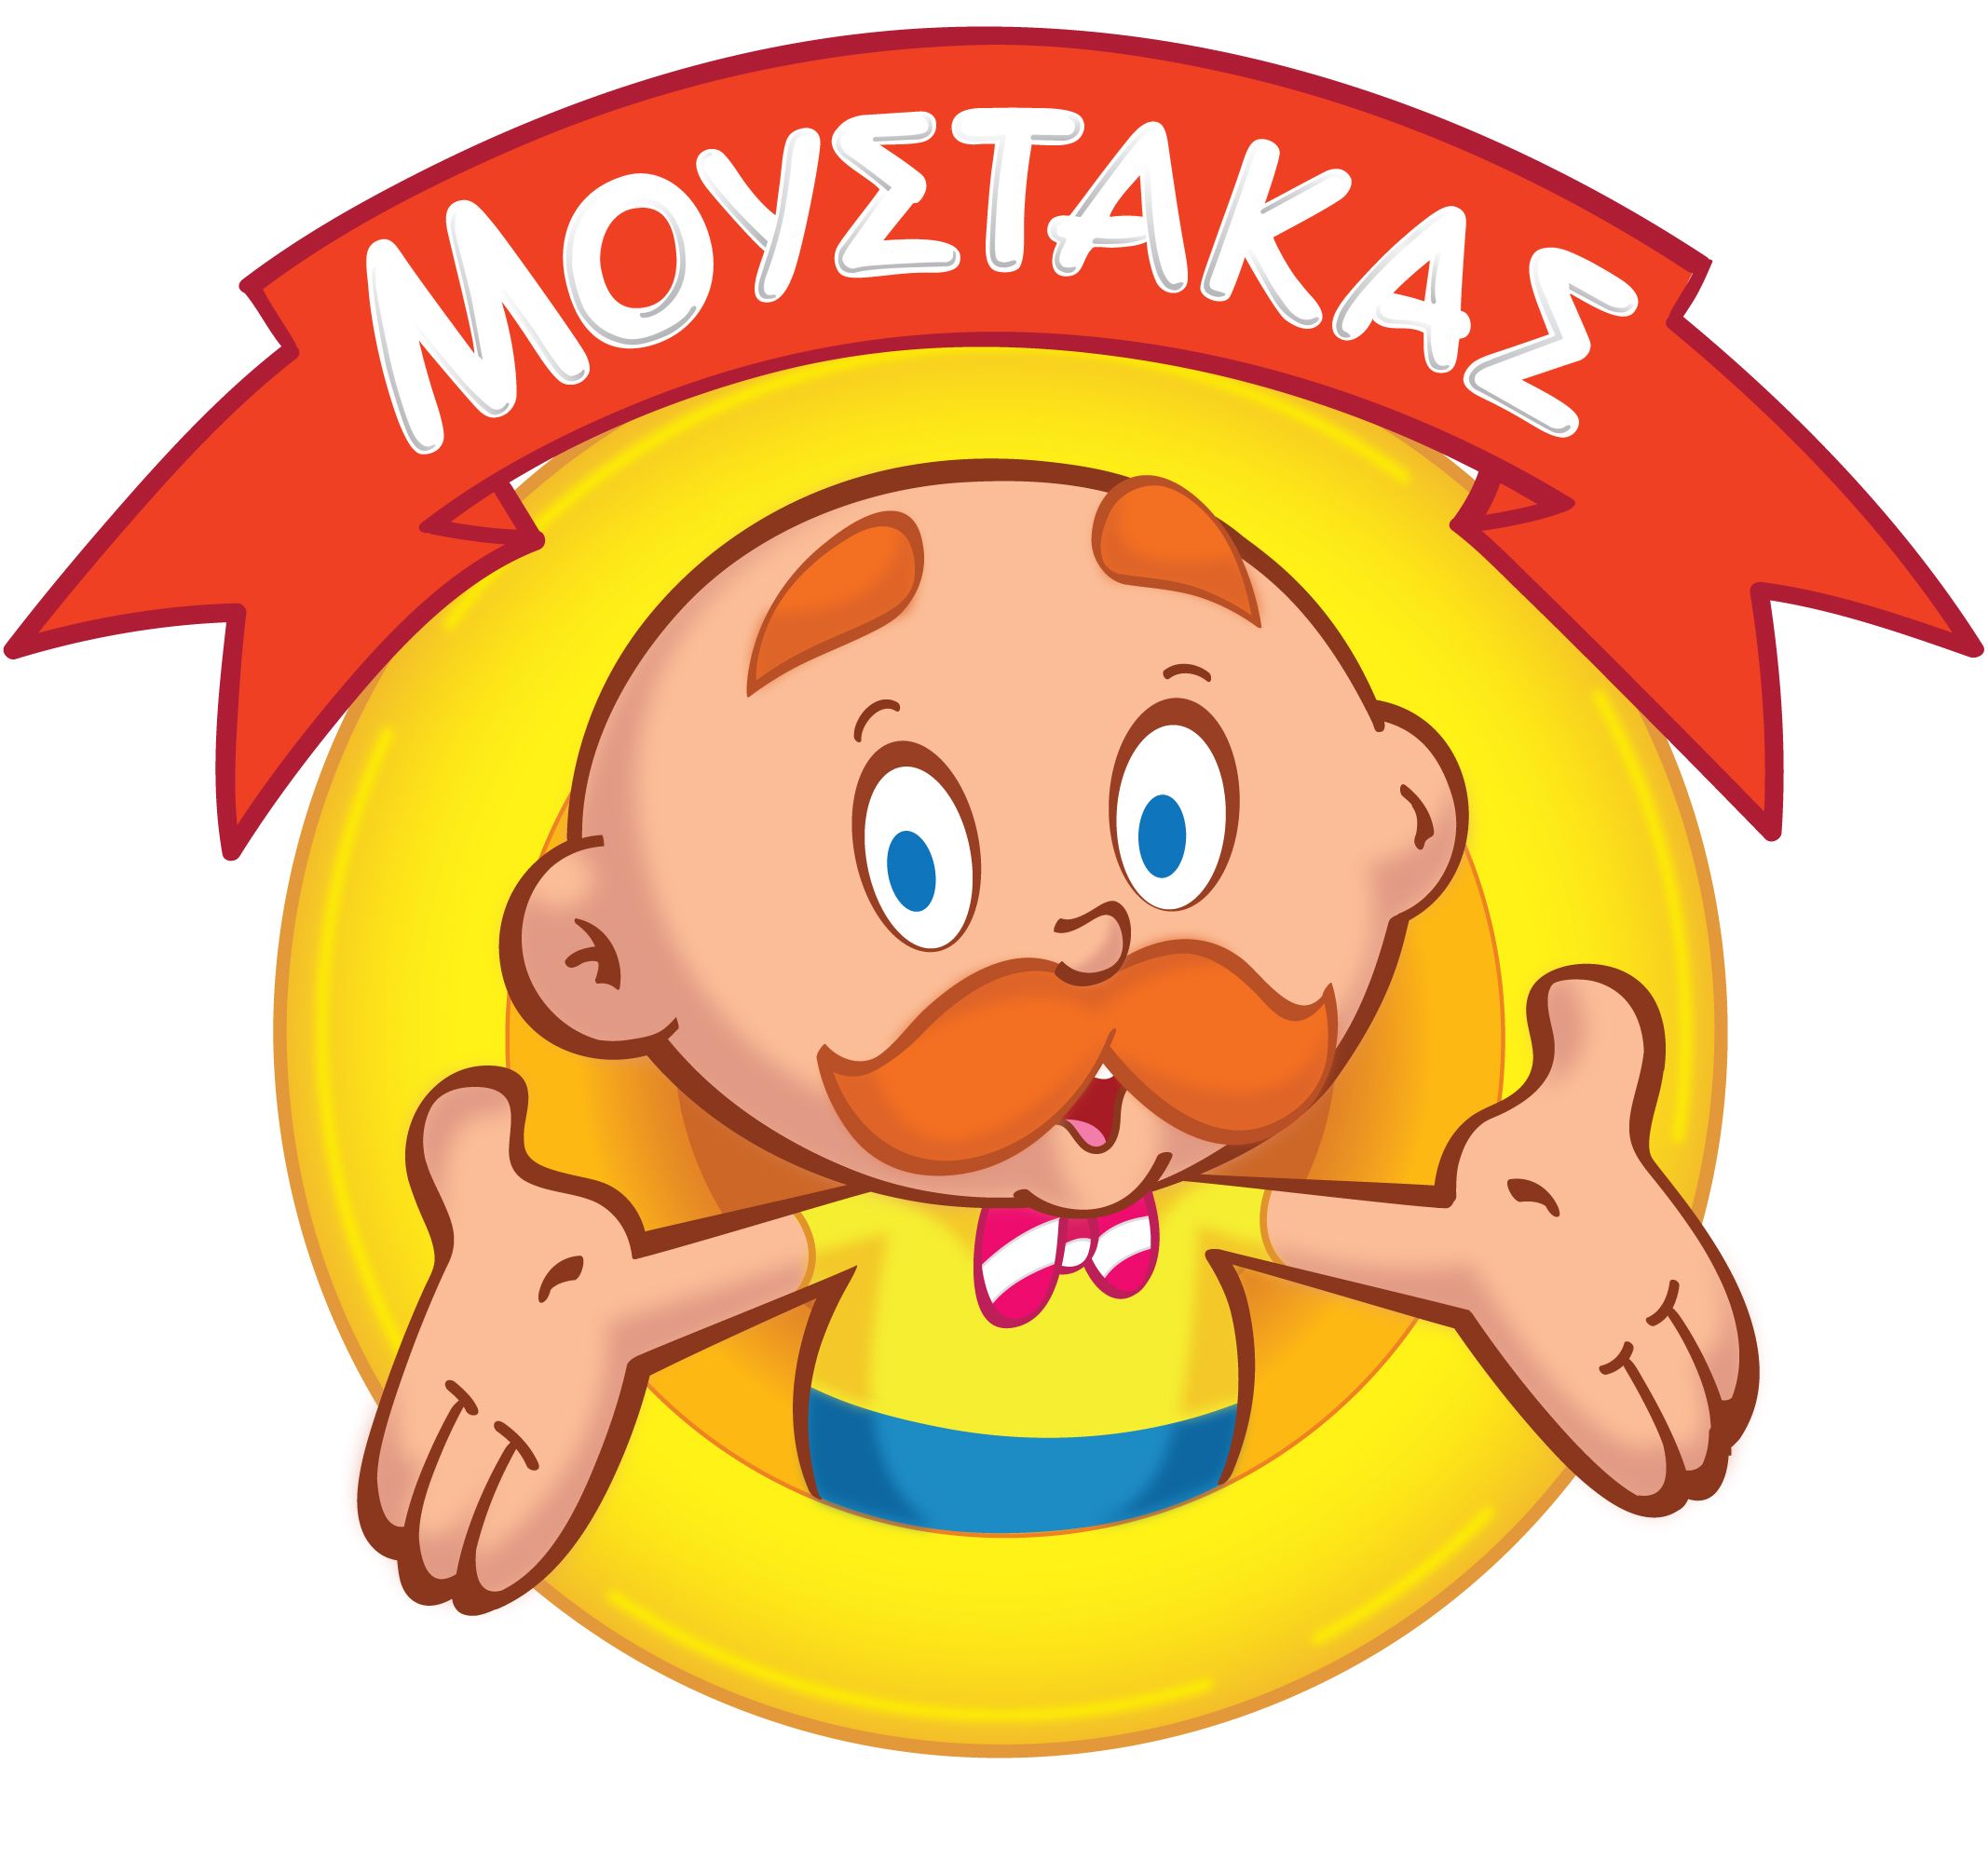 Παιχνιδάδικα Μουστάκας-logo